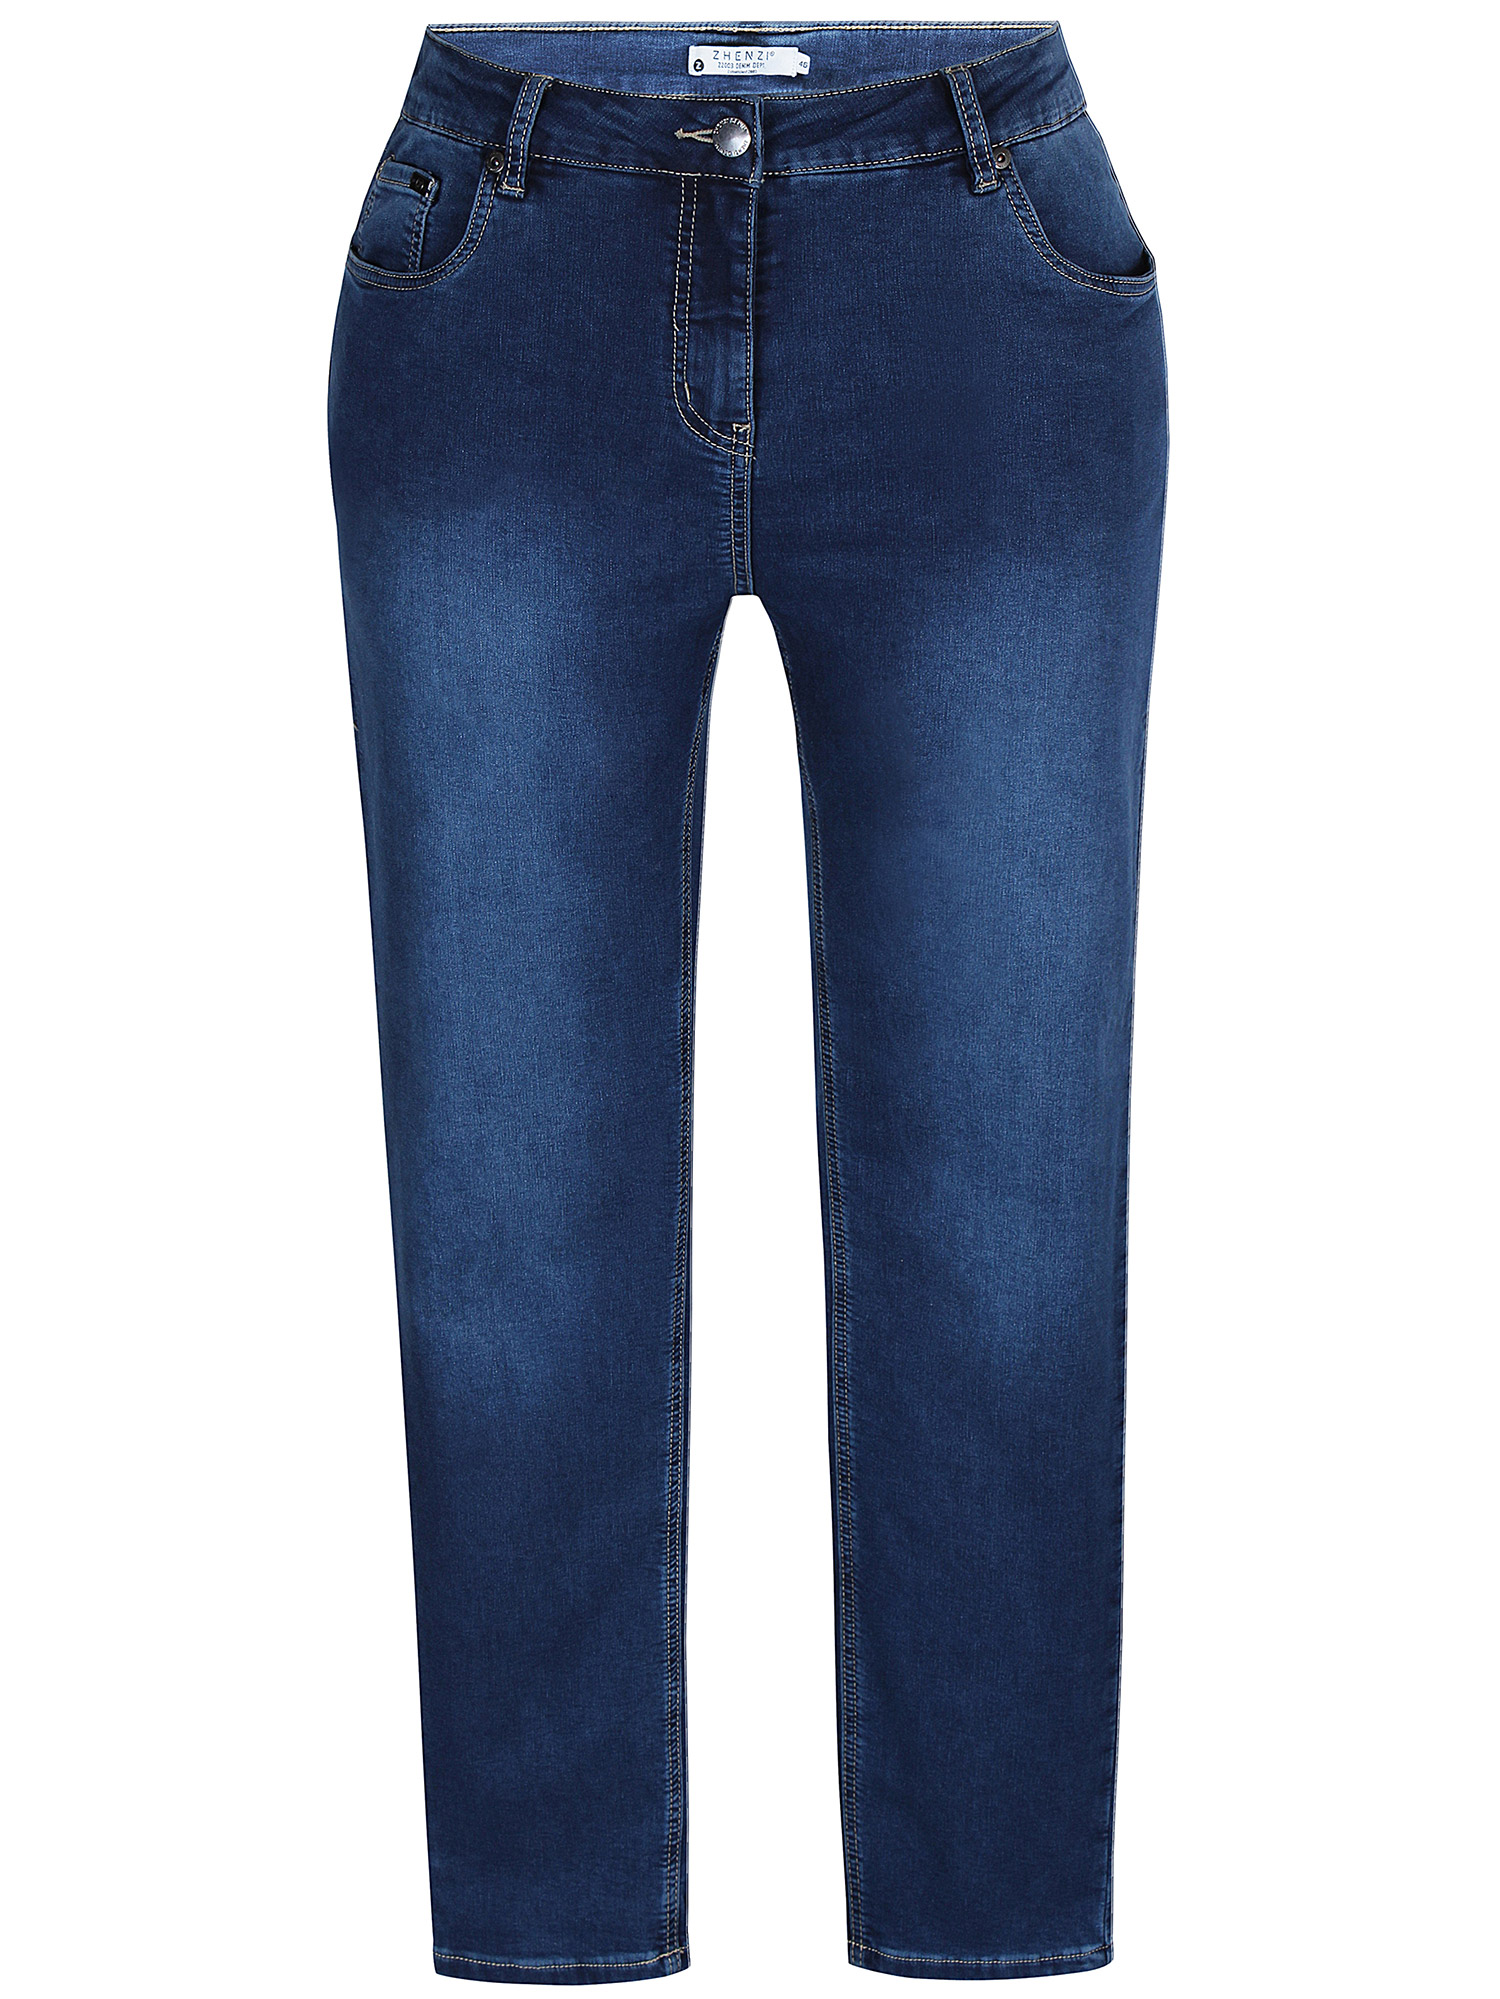 STOMP - Mørkeblå stretch jeans fra Zhenzi